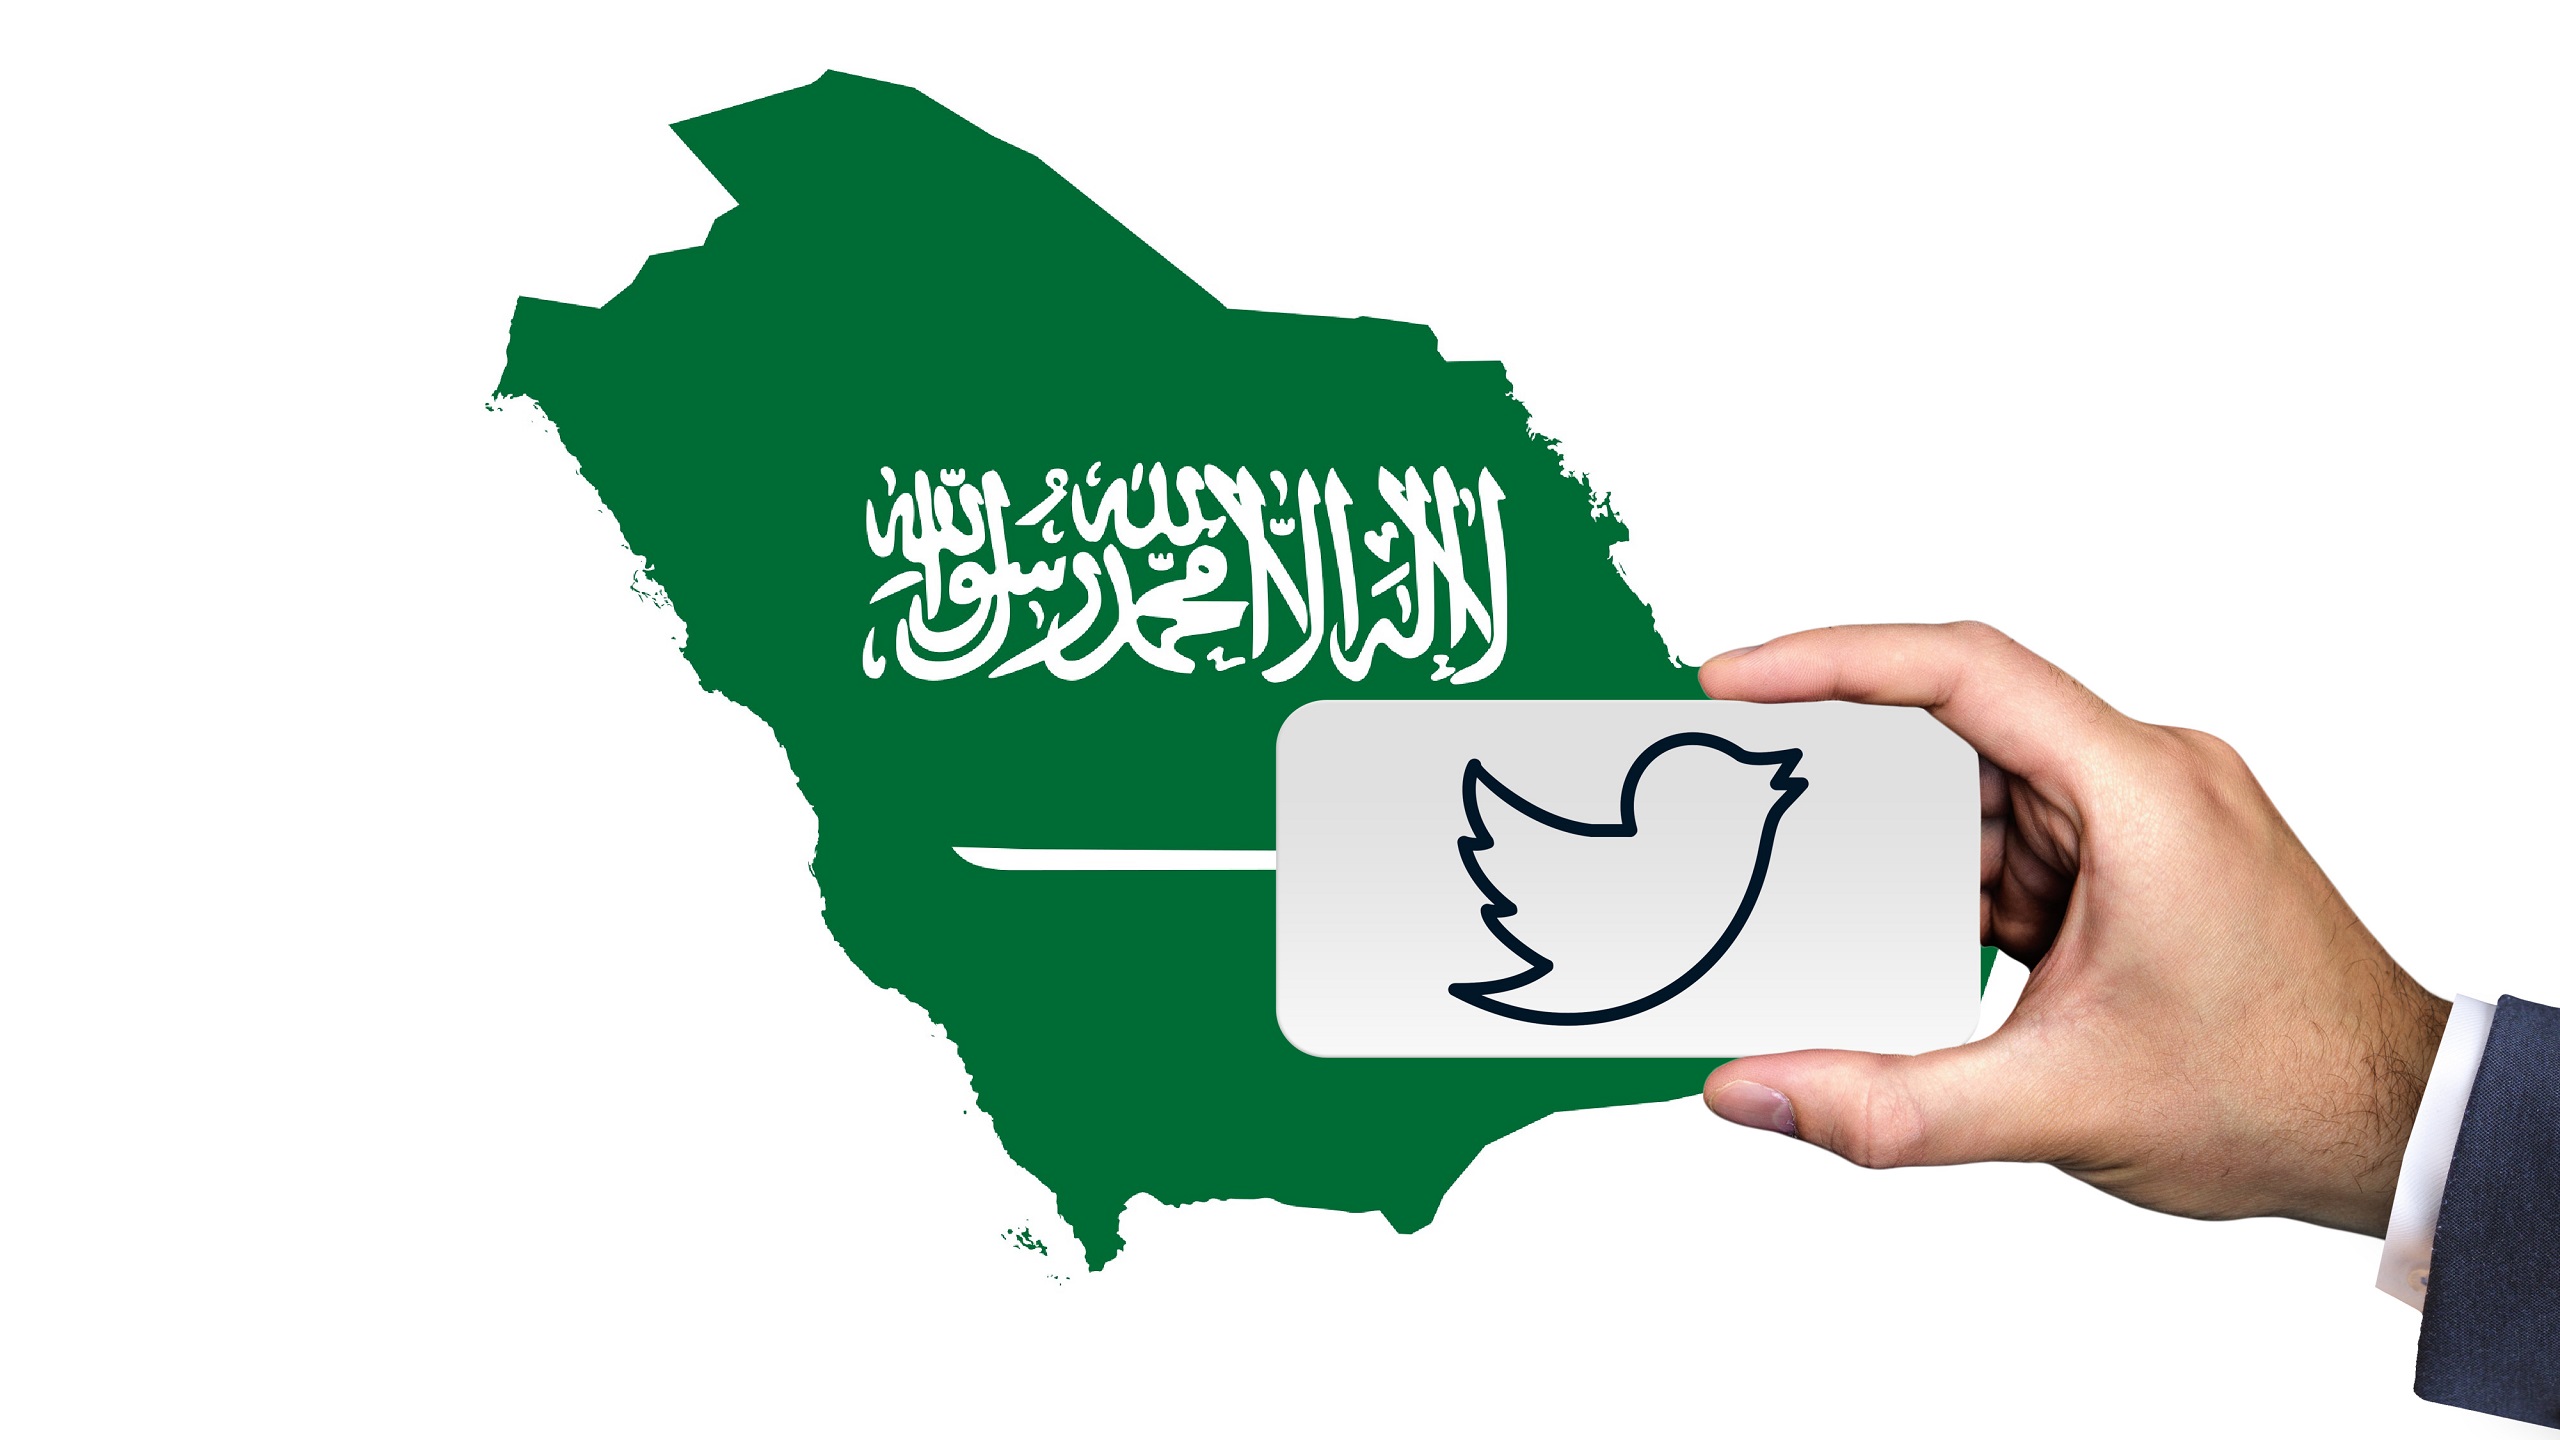 Acusan a Twitter y Arabia Saudita de violar derechos humanos